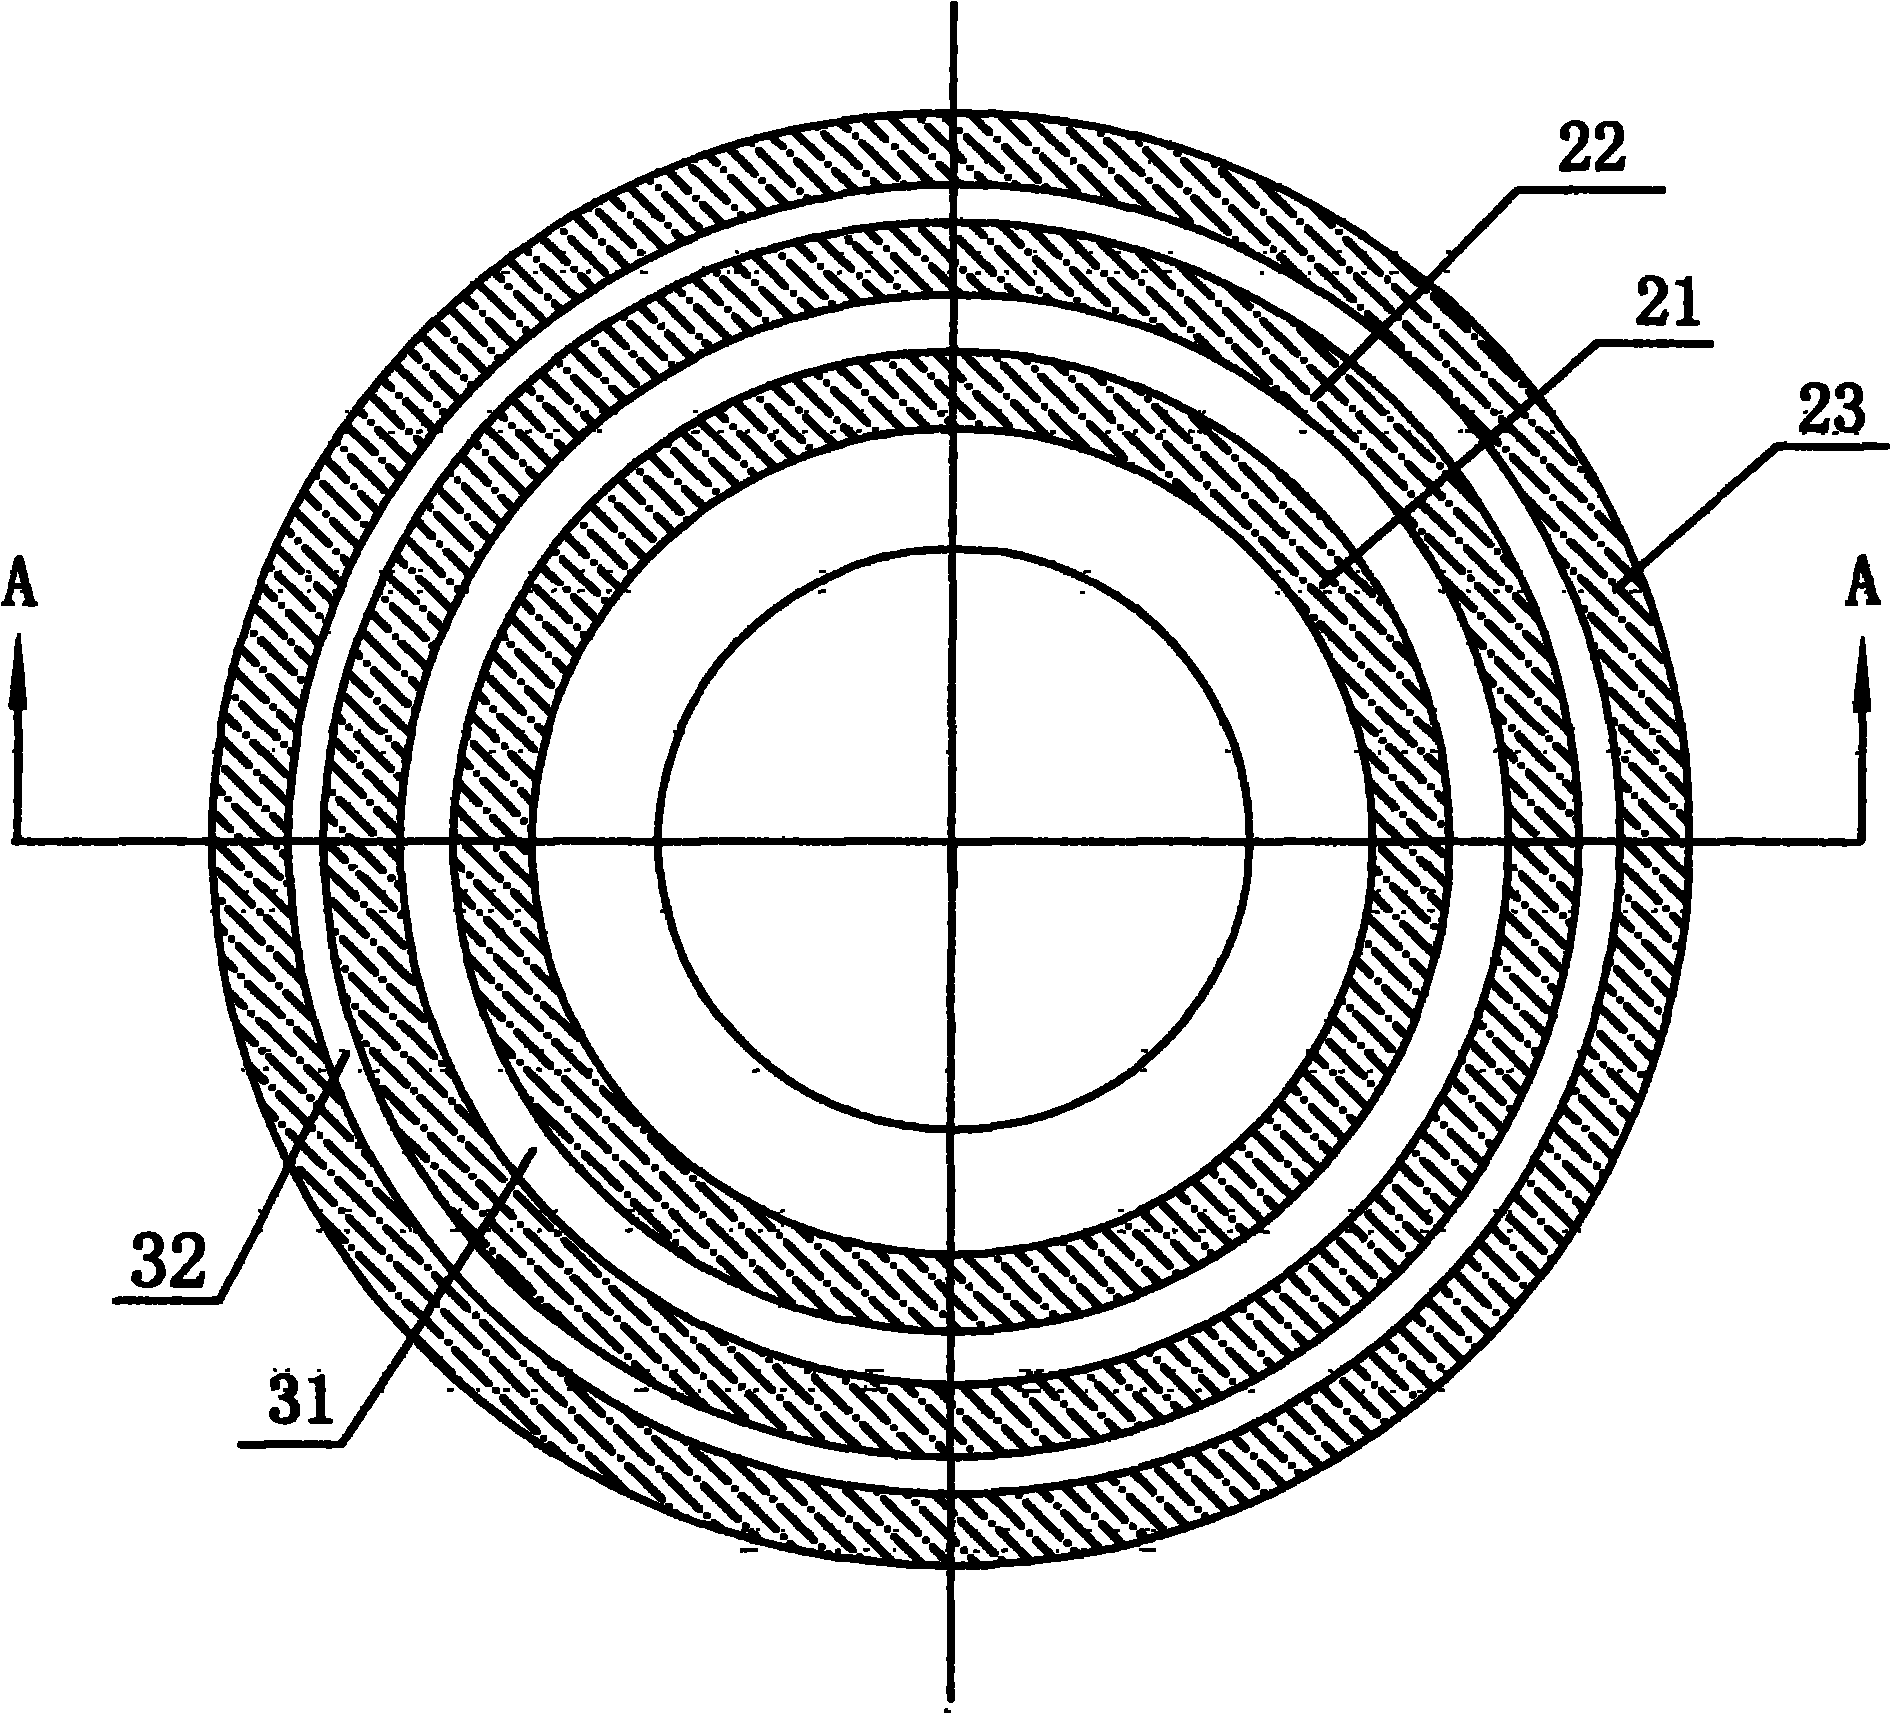 Multi-ring dry grinding wheel for tiles